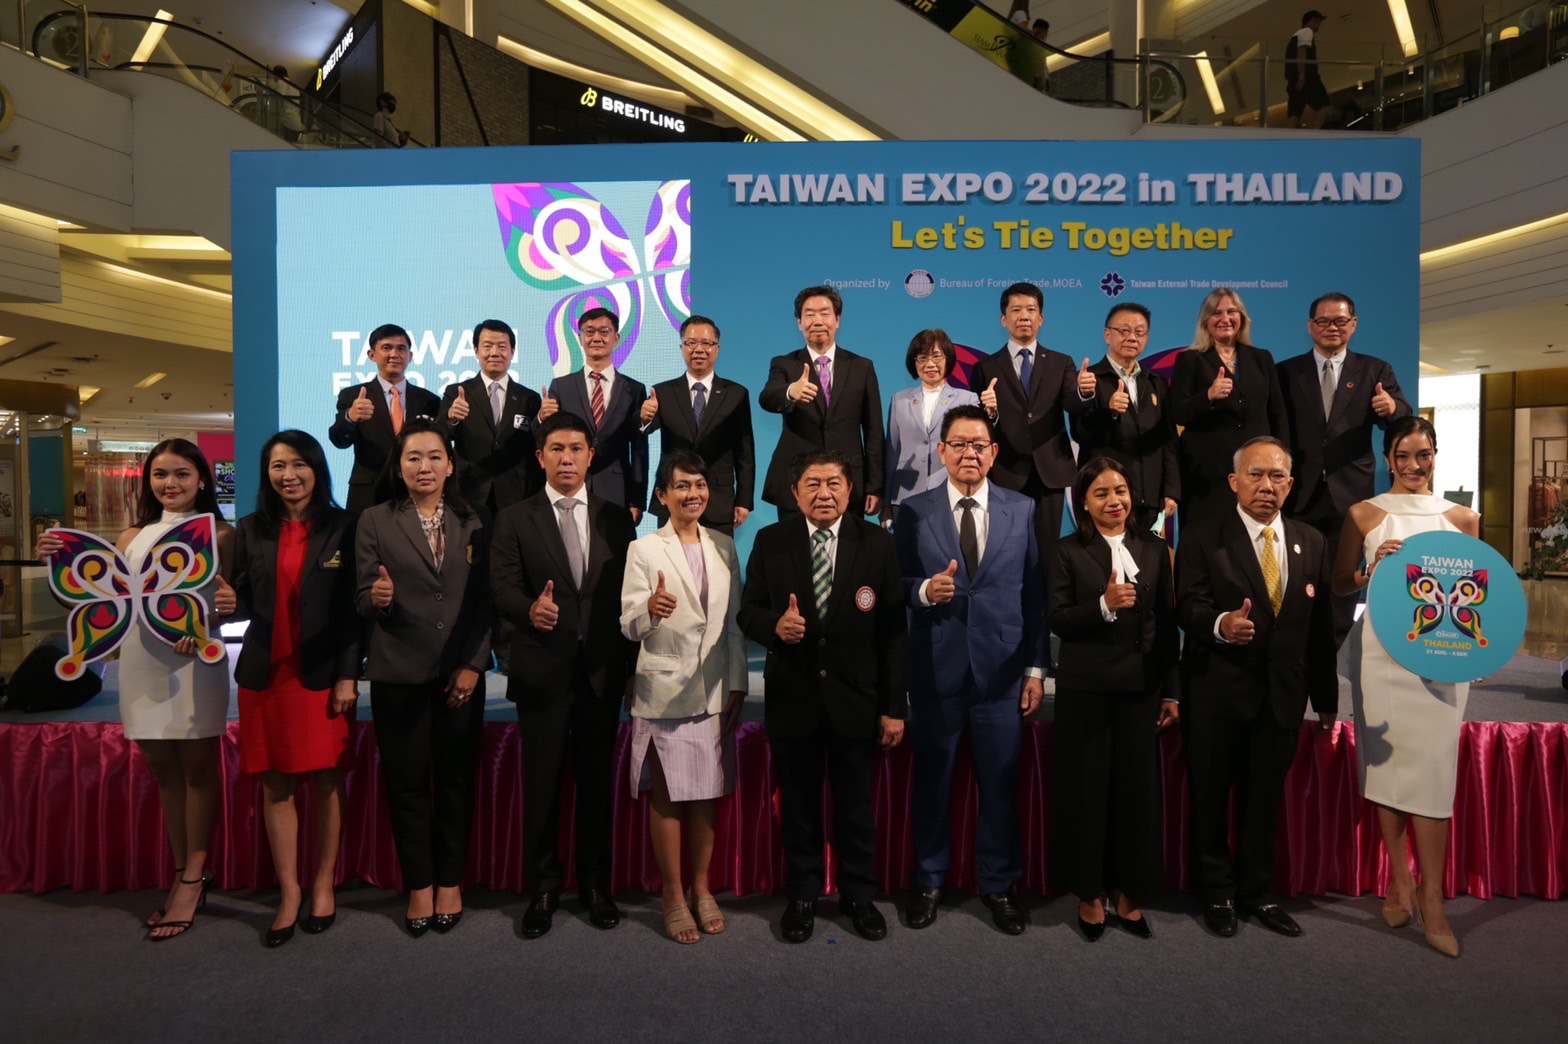 นายกสมาคม Thai Subcon เข้าร่วมพิธีเปิด Taiwan Expo 2022 ยกทัพแบรนด์ชั้นนำจัดแสดงสินค้า พร้อมโอกาสในการจับคู่ธุรกิจกระตุ้นเศรษฐกิจไทย-ไต้หวัน